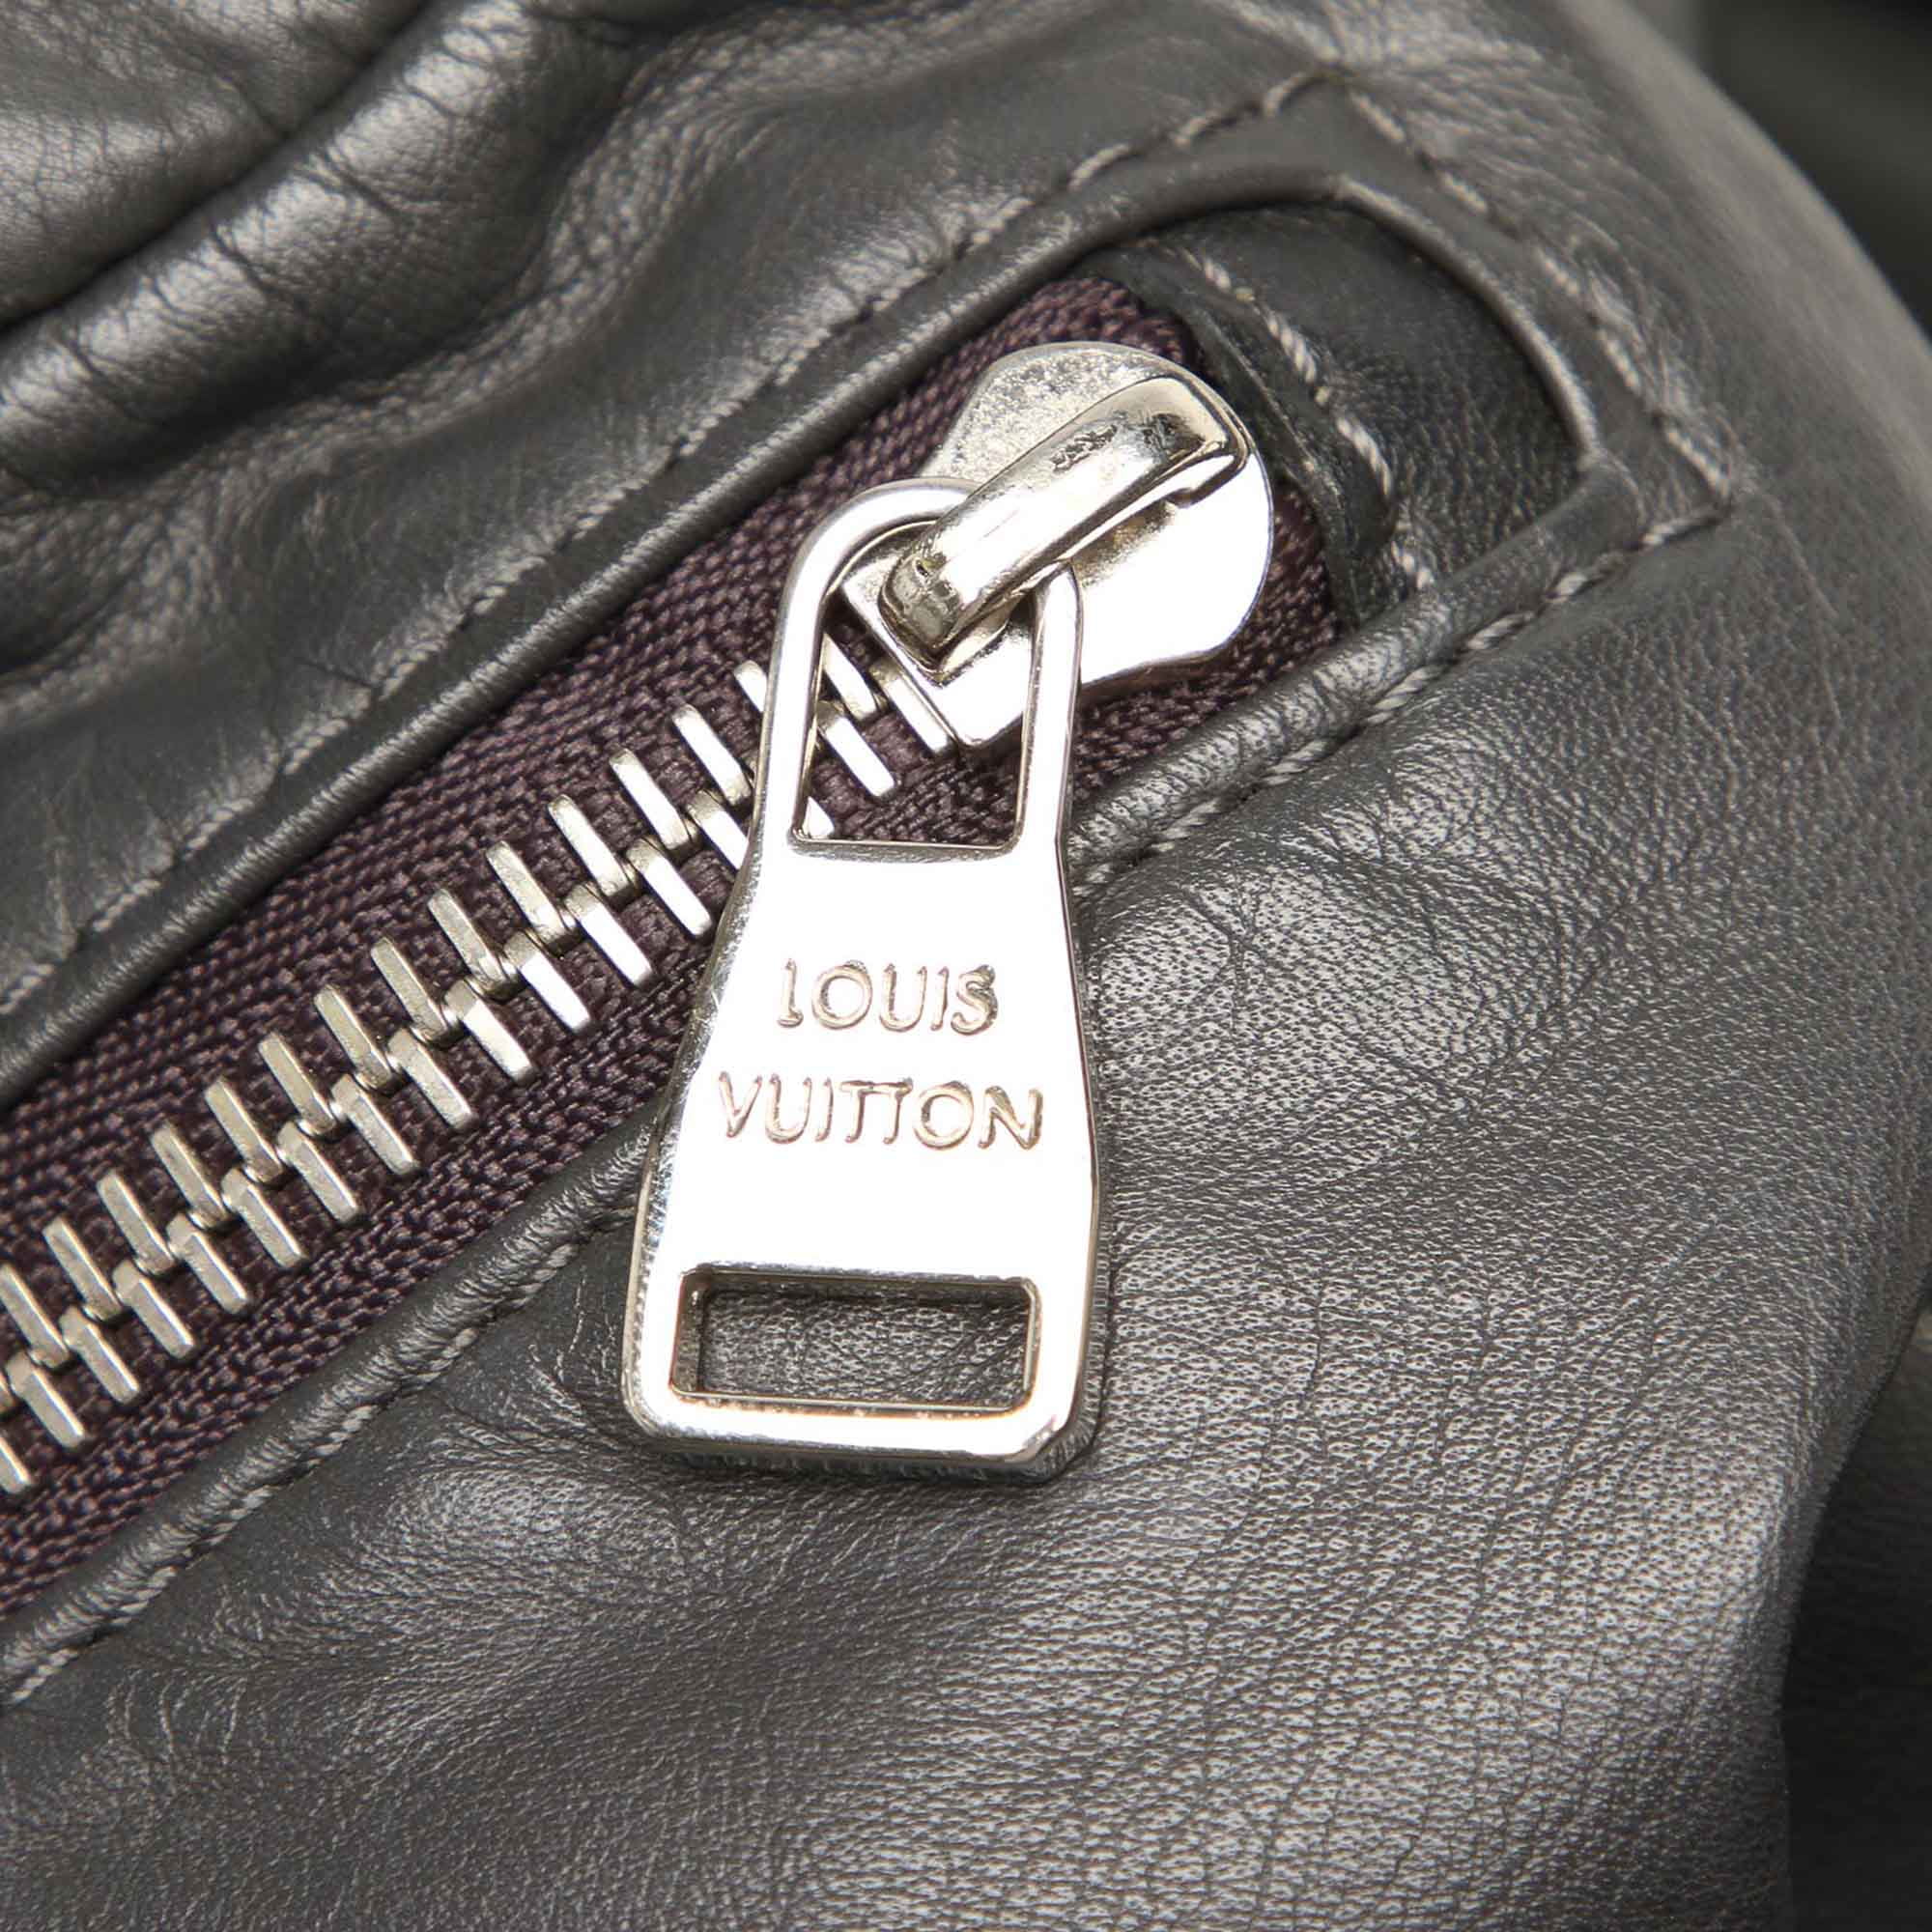 Unisex Pre-Owned Louis Vuitton V-Line Start Travel Bag Calf